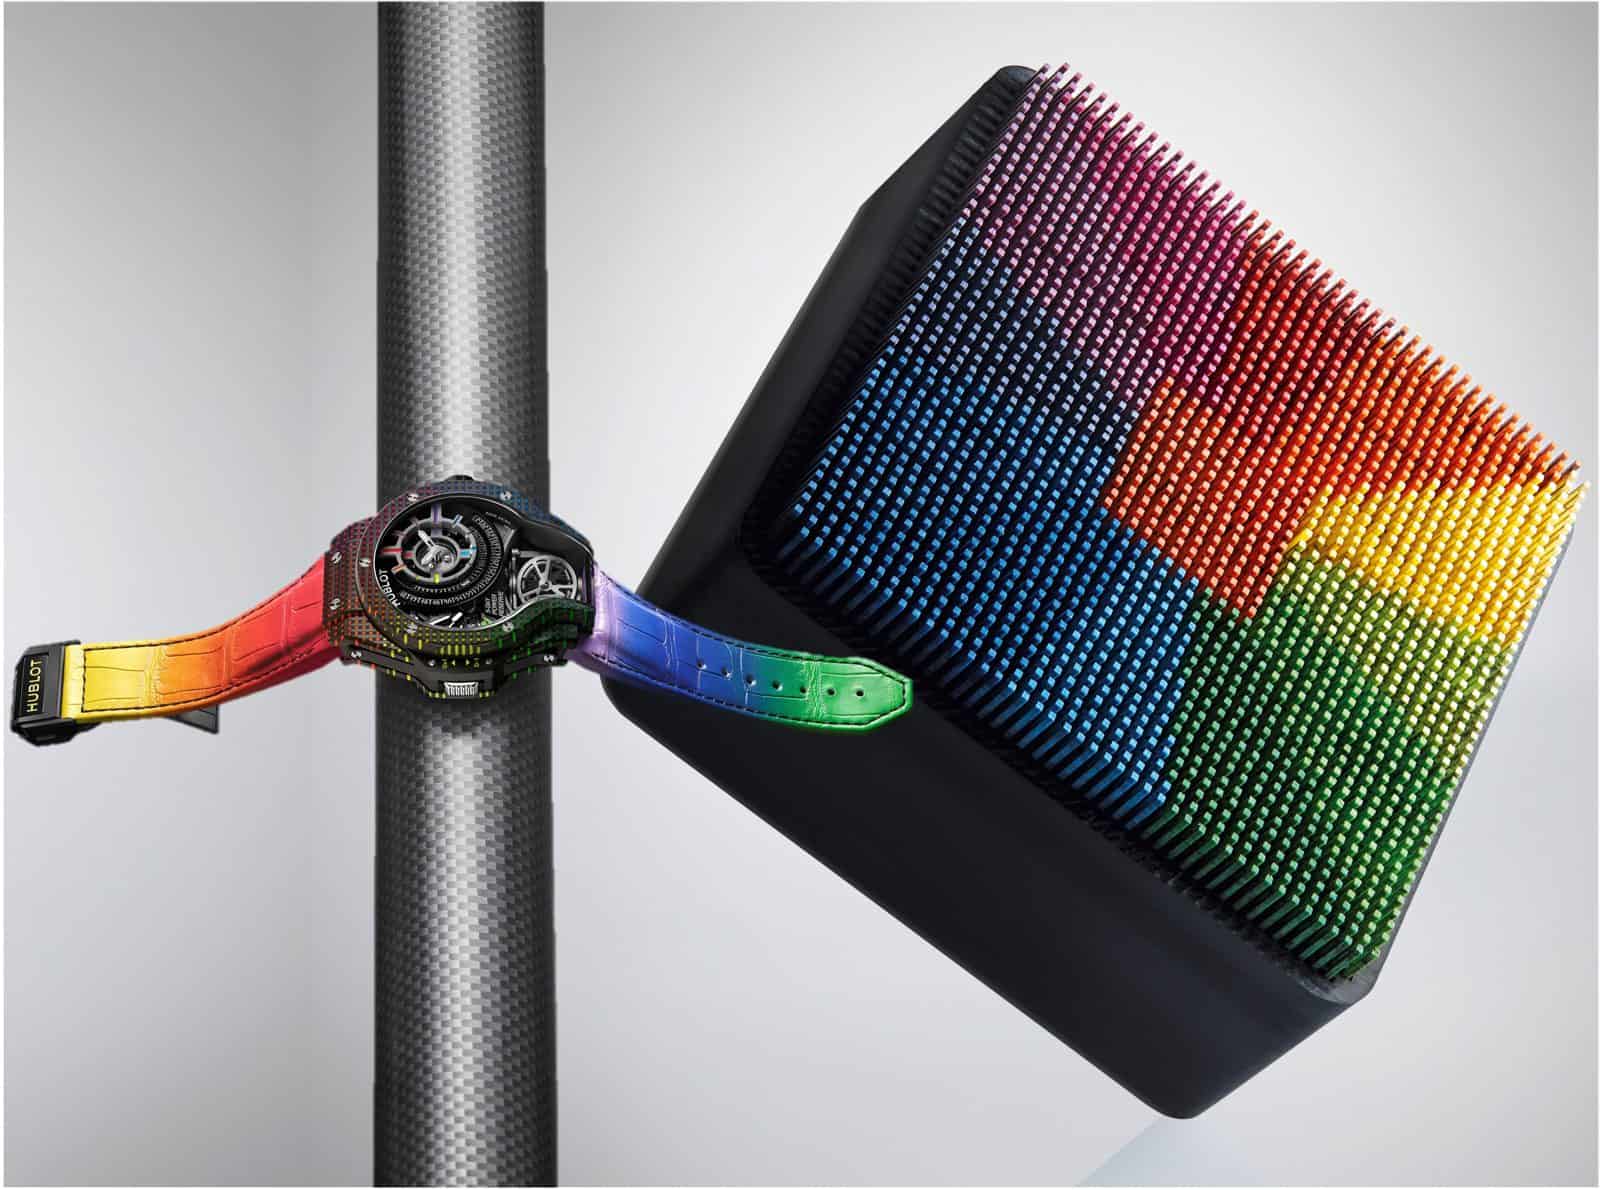 Hublot und der Regenbogen - das ist das Aussehen der MP-09 Tourbillon Bi-Axis 5-Day Power Reserve Rainbow 